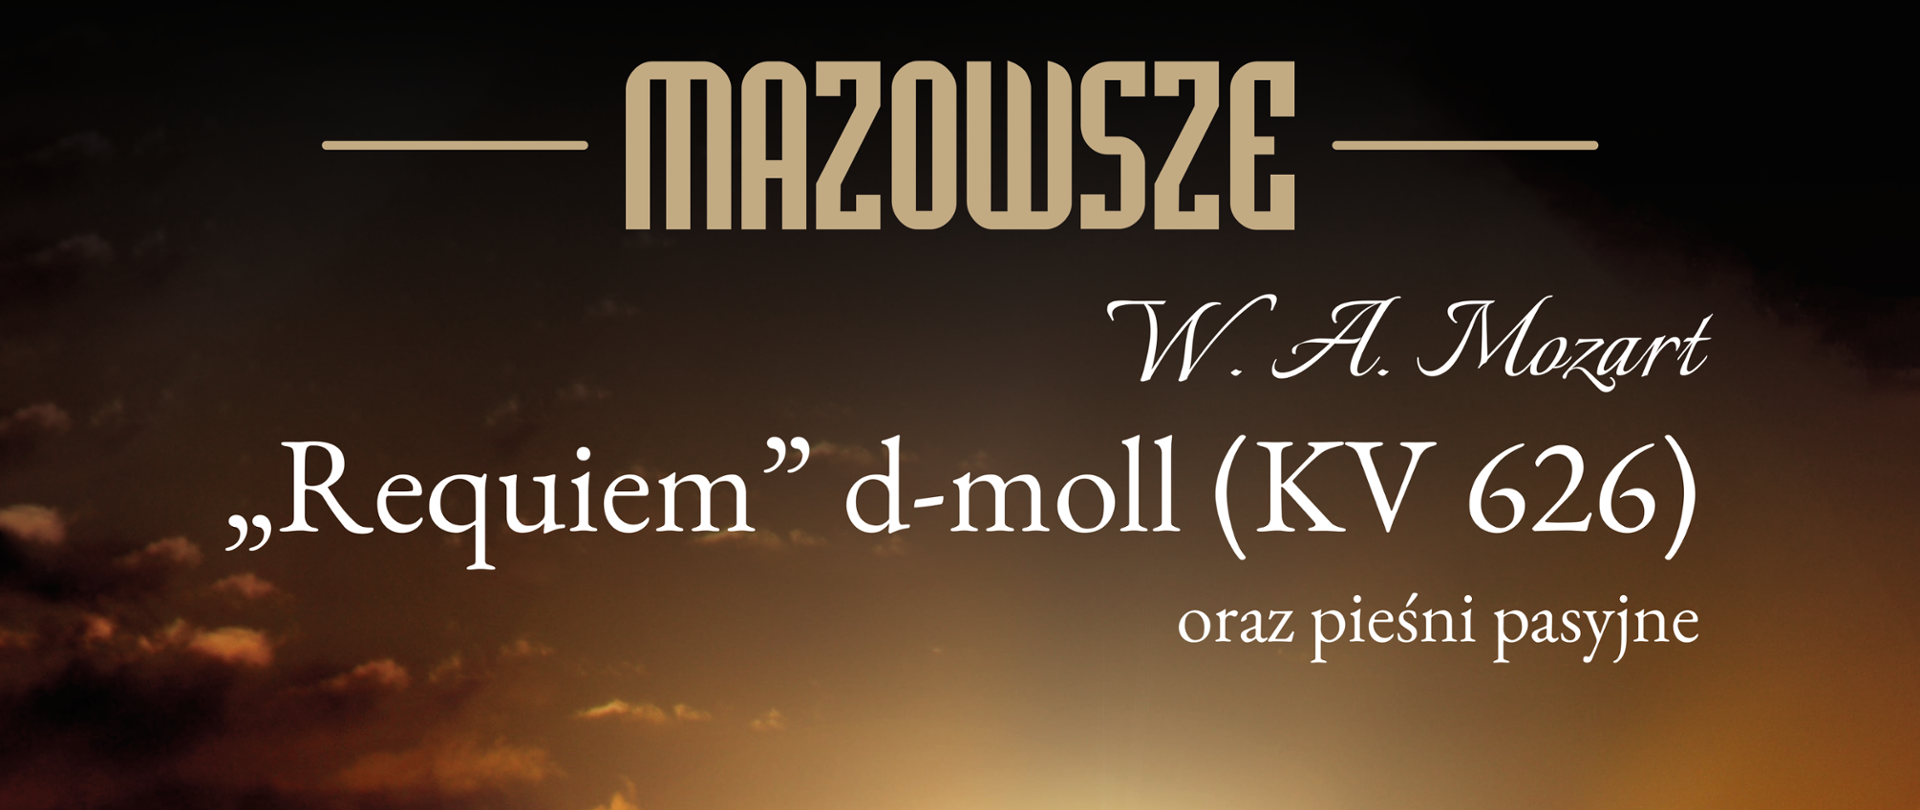 Wielkanocny koncert Zespołu Ludowego Pieśni i Tańca "Mazowsze" pt. „Requiem d-moll Mozarta oraz pieśni pasyjne” - plakat. 